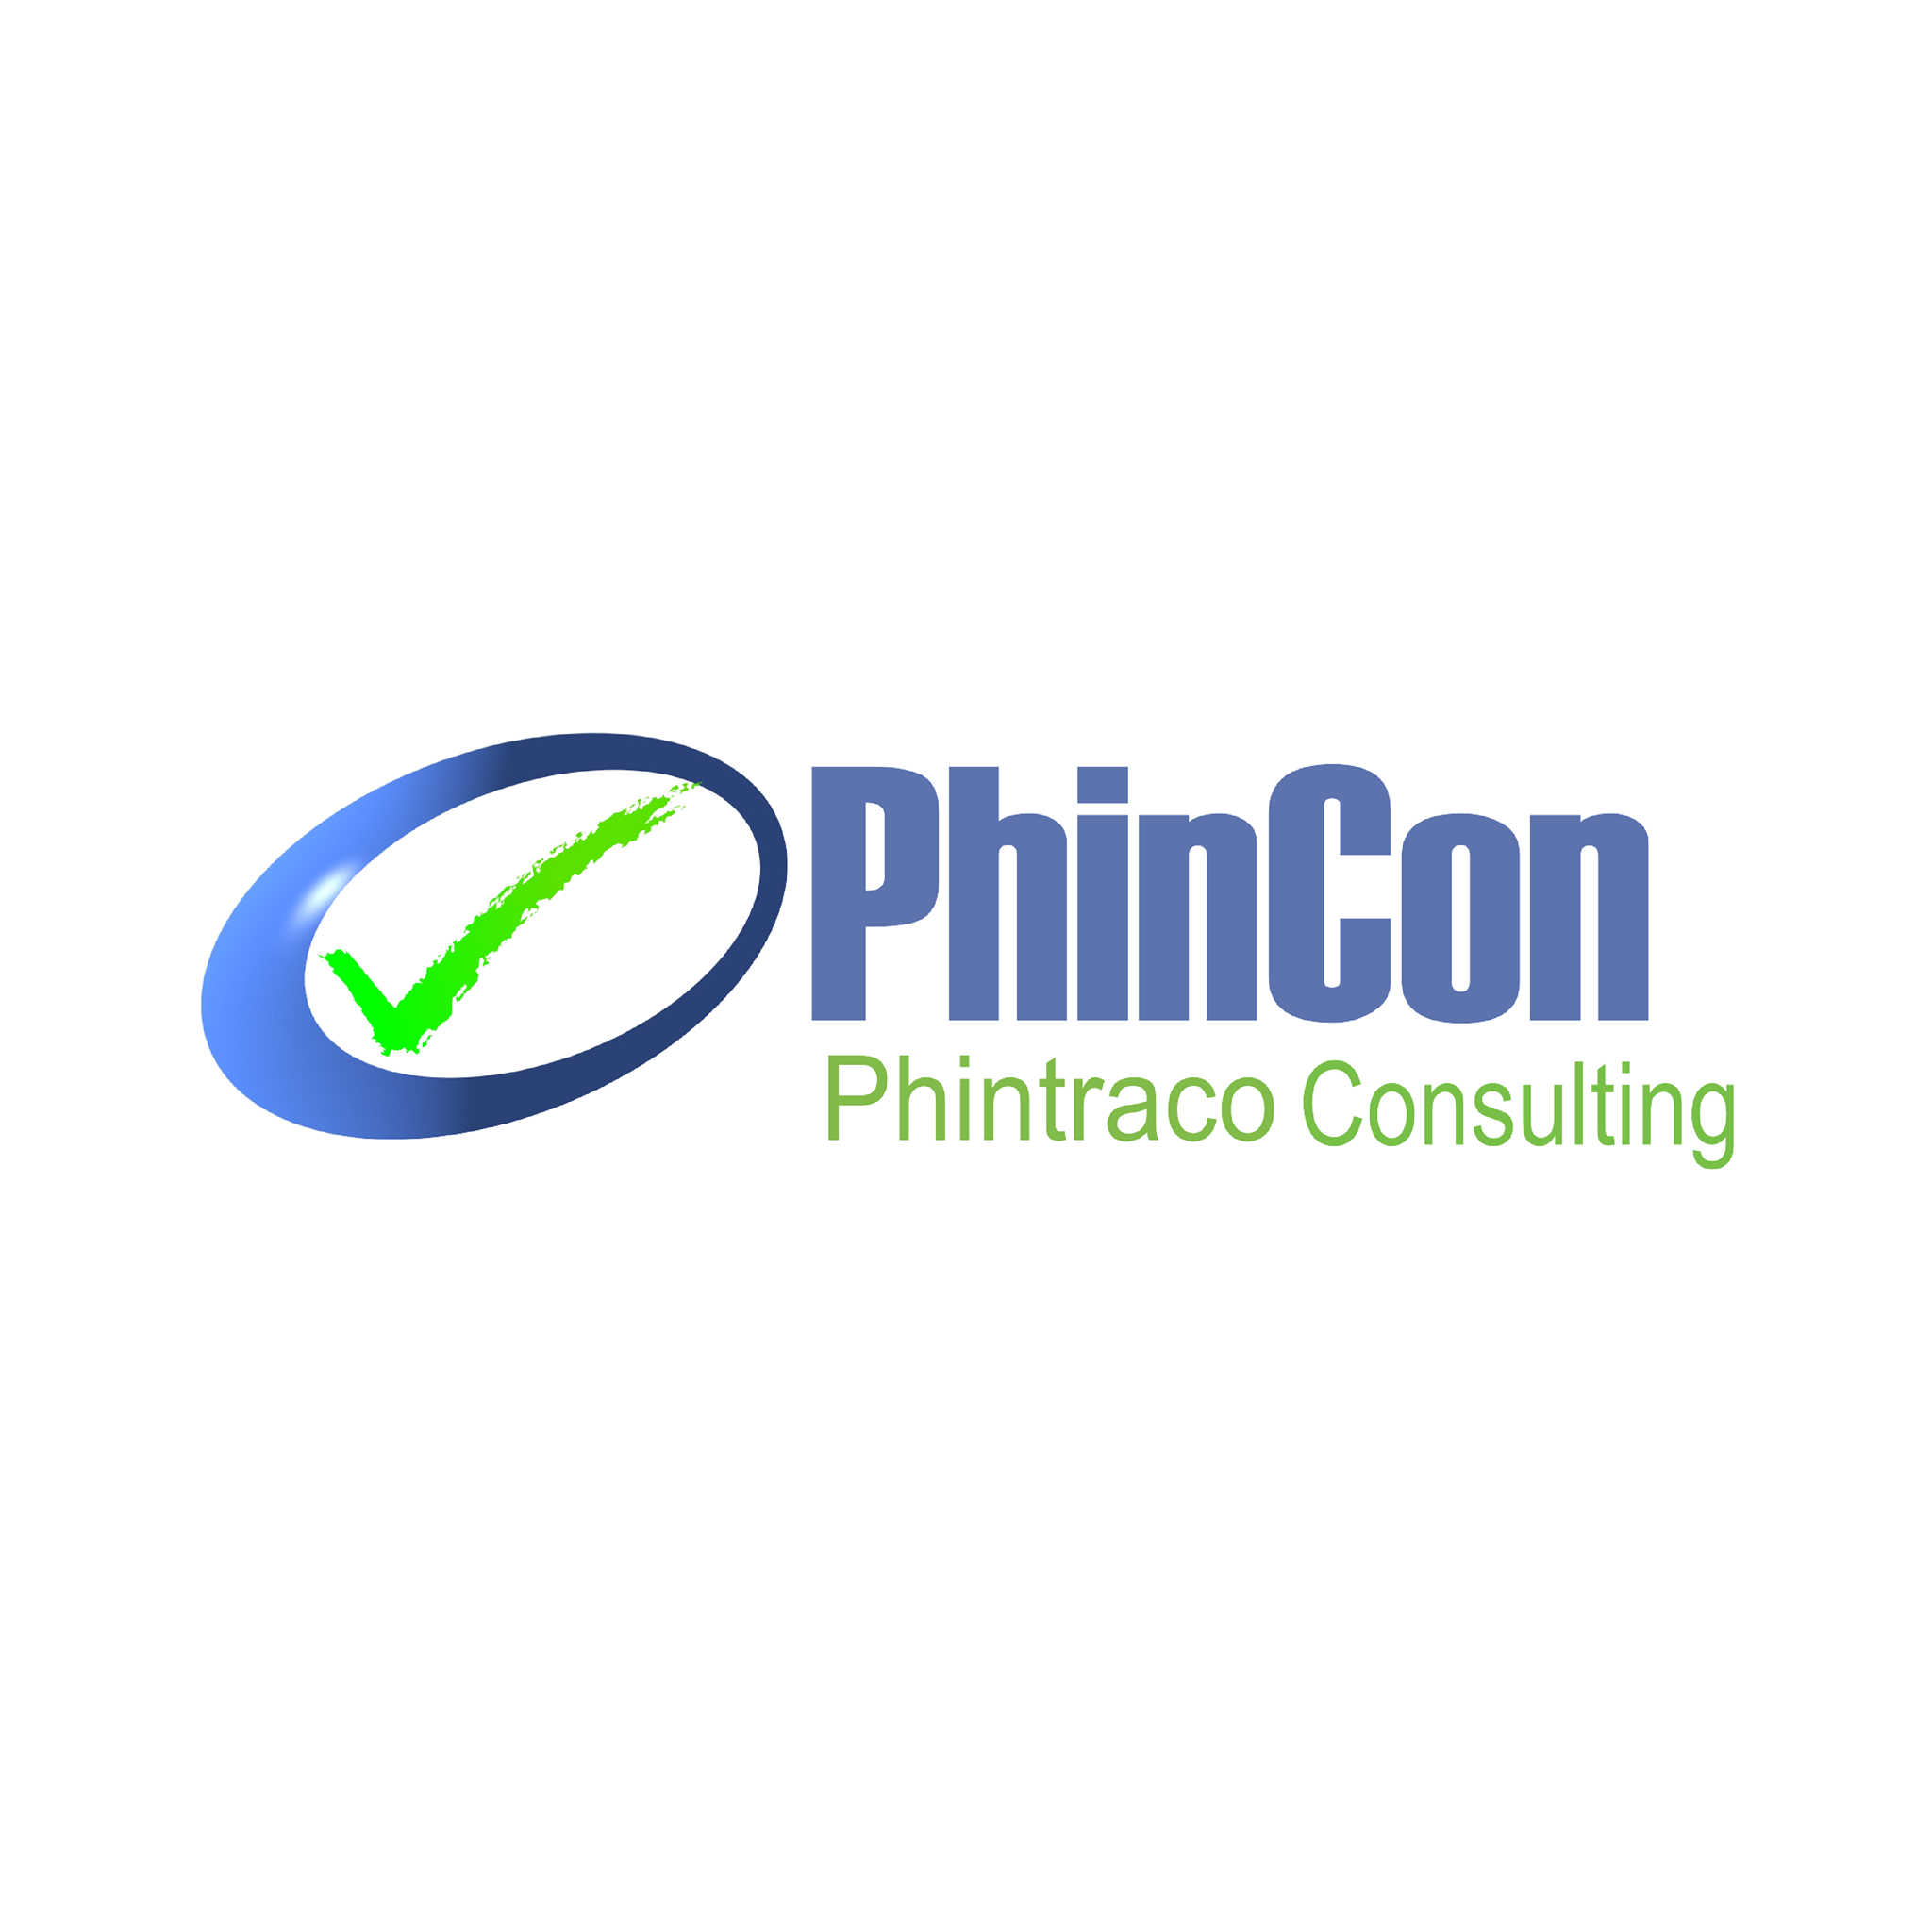 PhinCon